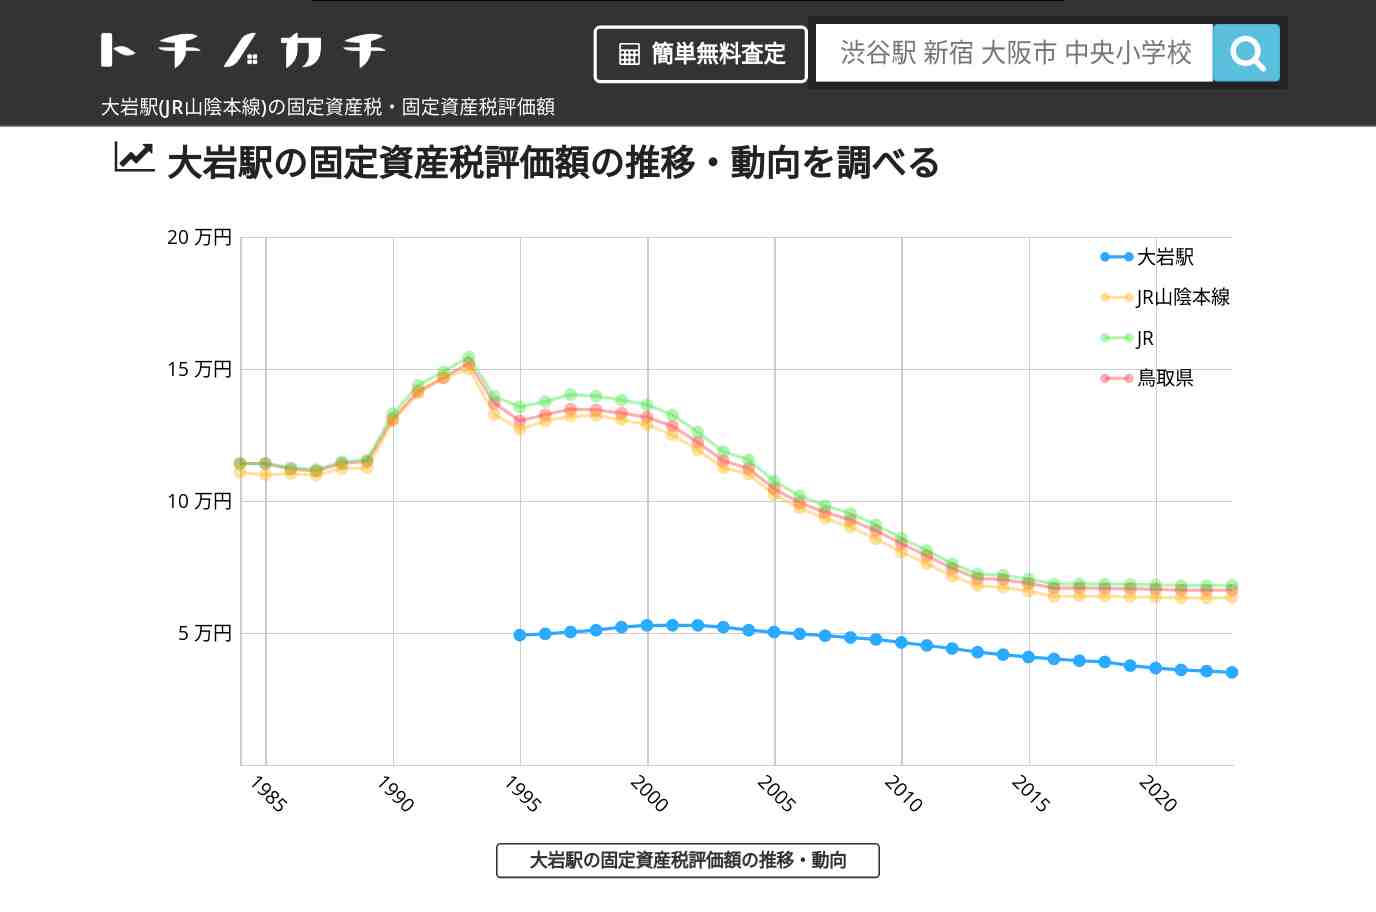 大岩駅(JR山陰本線)の固定資産税・固定資産税評価額 | トチノカチ